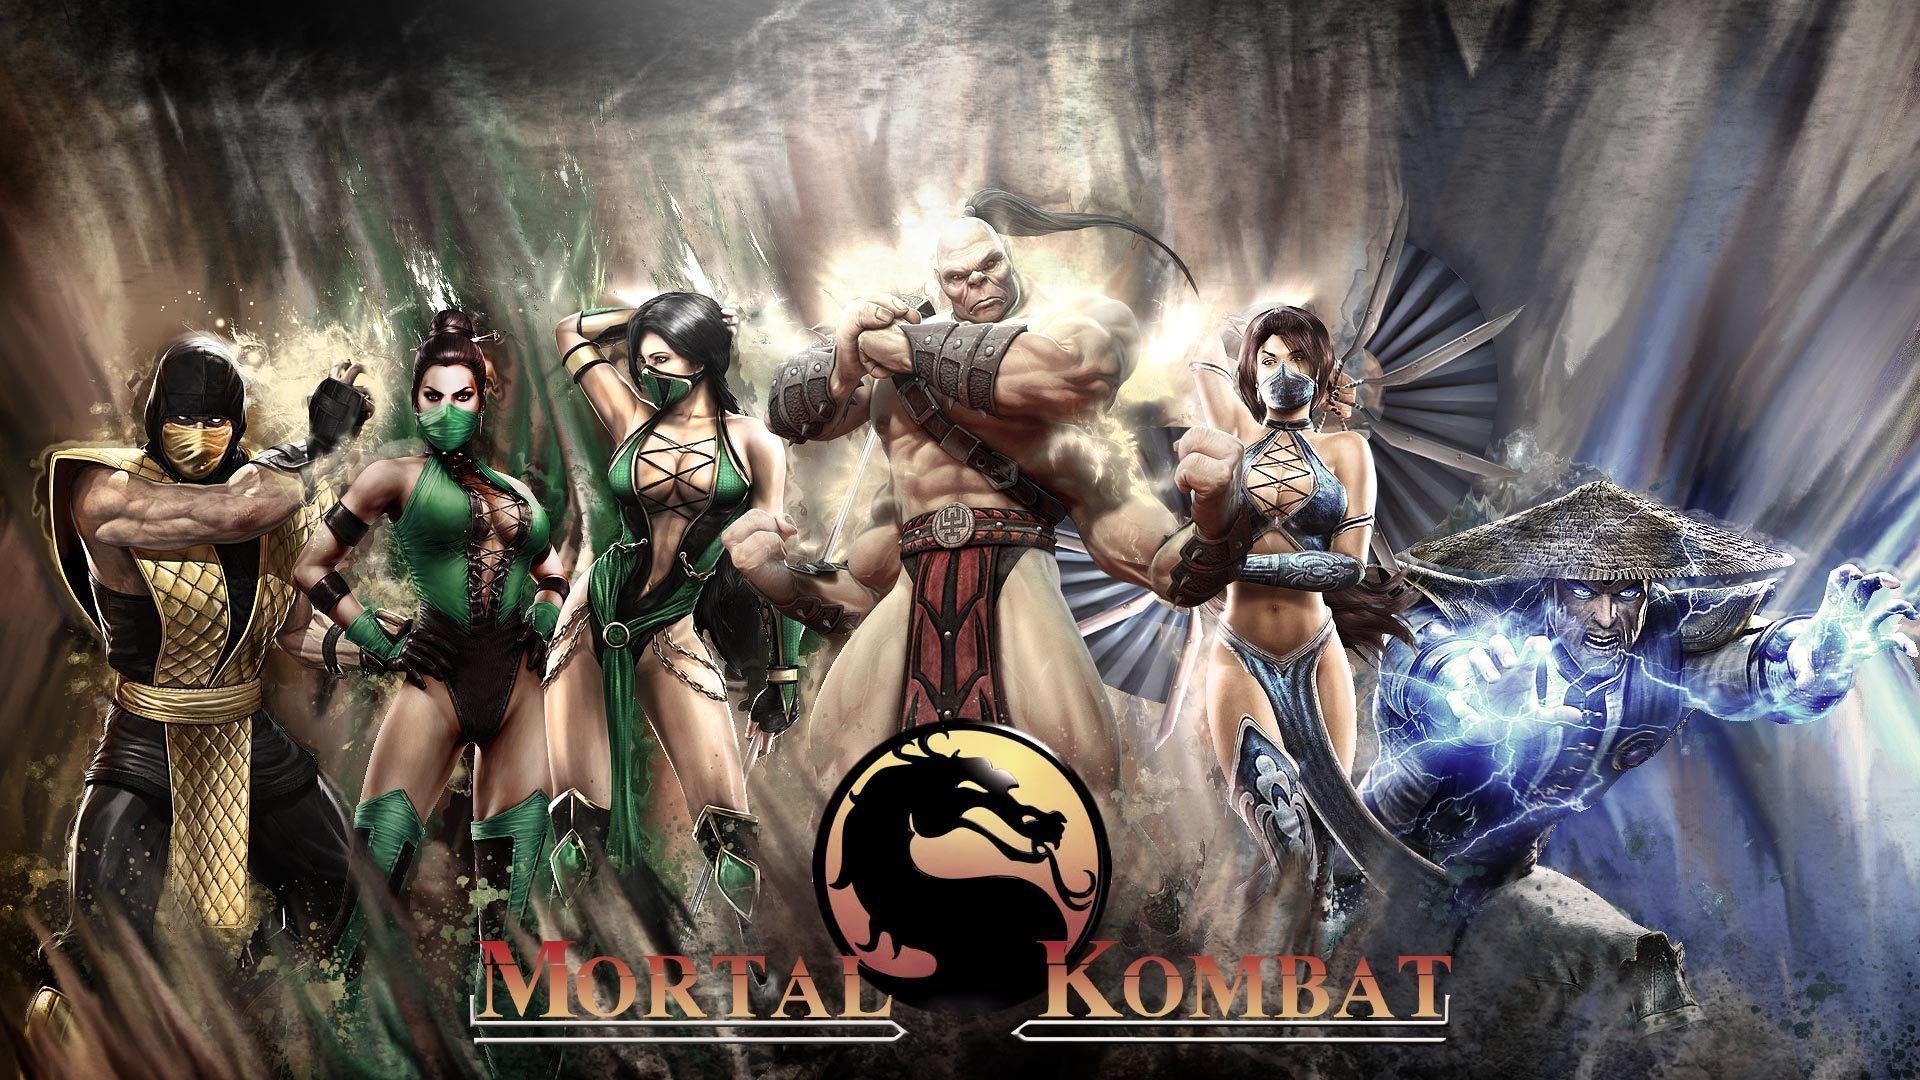 Mortal Kombat Computer Wallpapers, Desktop Backgrounds | 1920x1080 ...